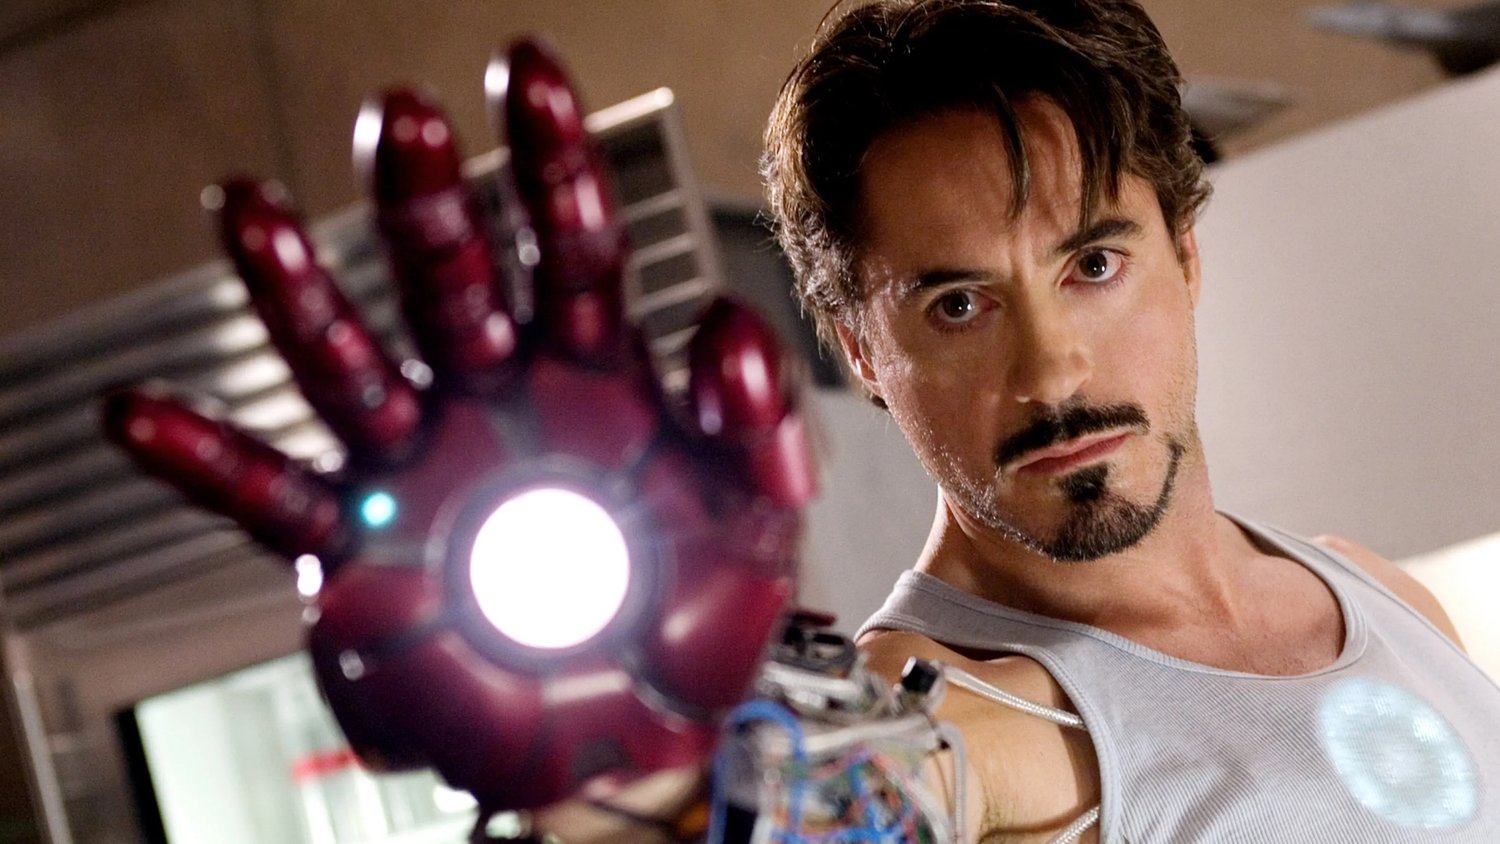 Christopher Nolan dit que le casting de Robert Downey Jr. dans le rôle d'Iron Man est historique dans le secteur du cinéma